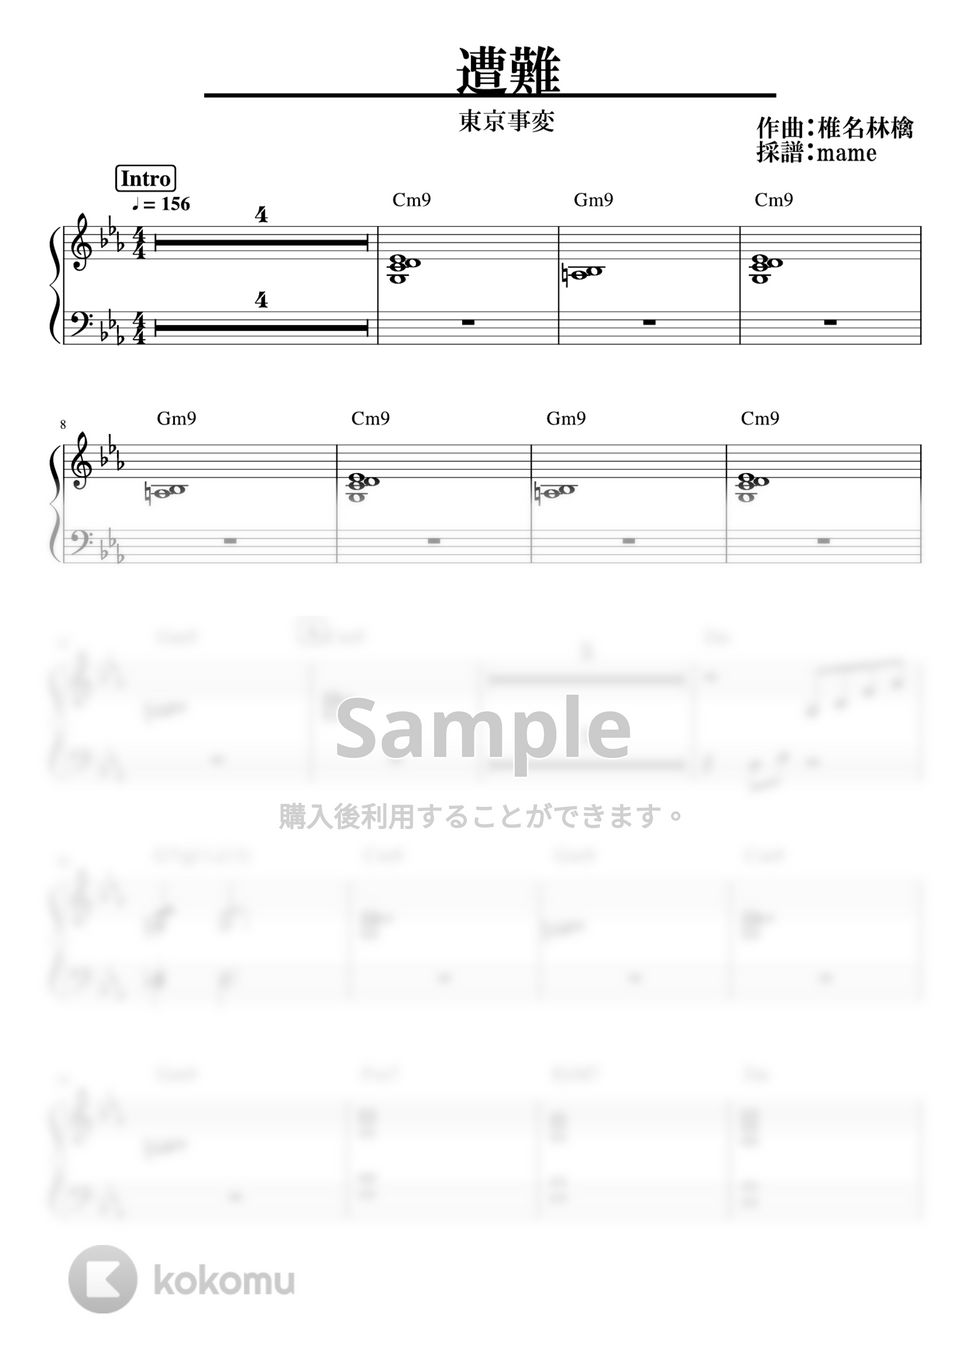 東京事変 - 遭難 (ピアノパート) by mame